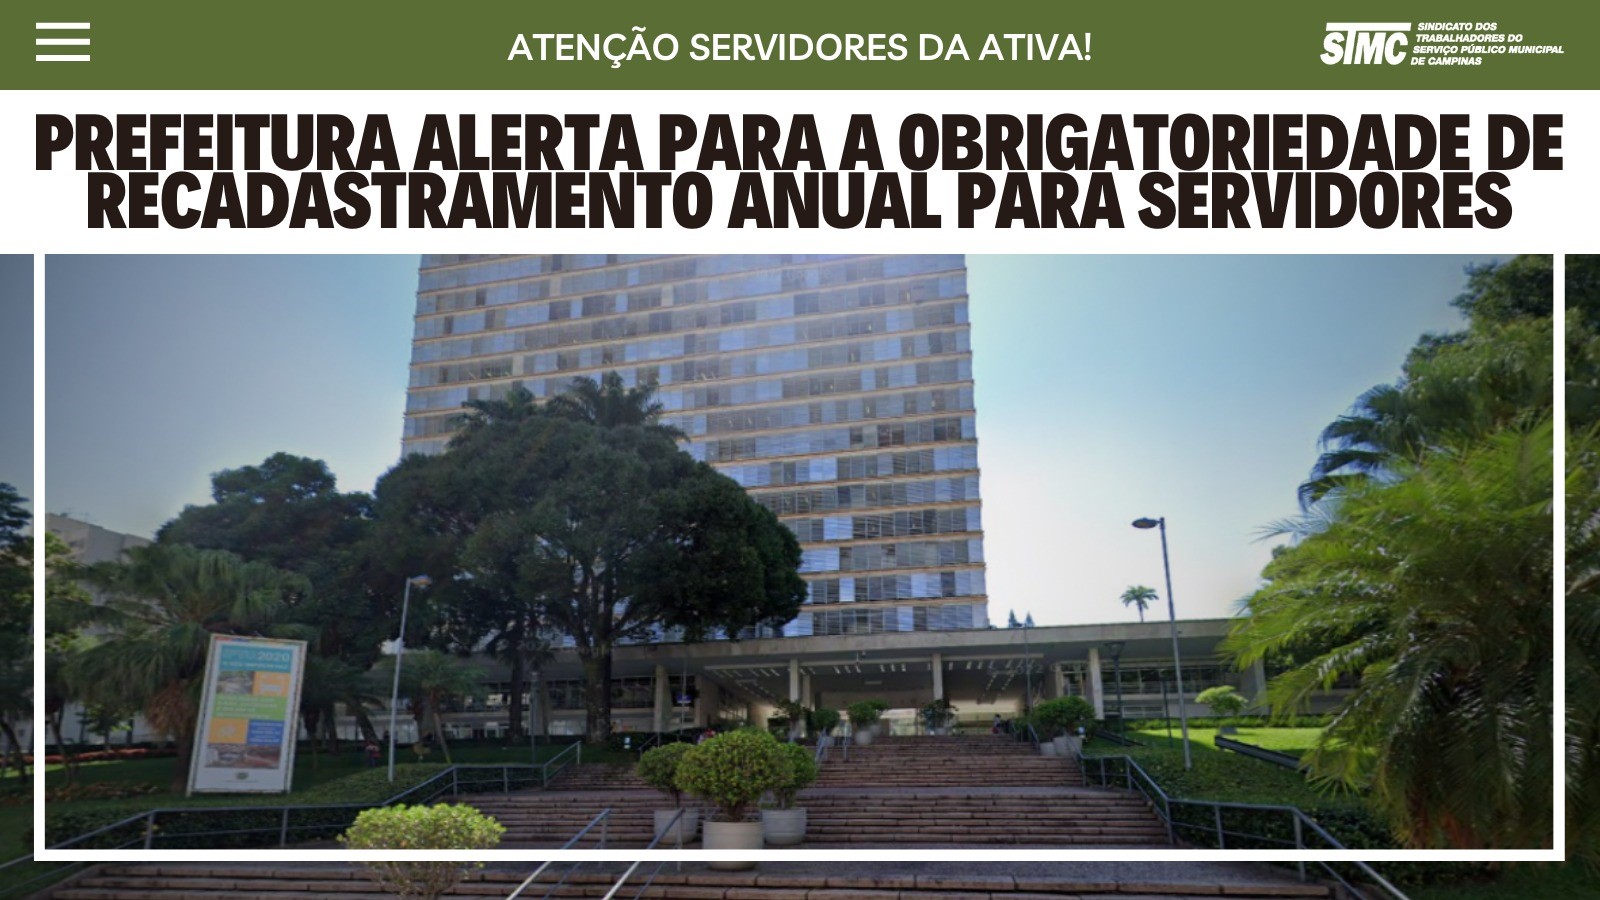 ATENÇÃO SERVIDORES DA ATIVA: Prefeitura alerta para a obrigatoriedade de recadastramento anual. 